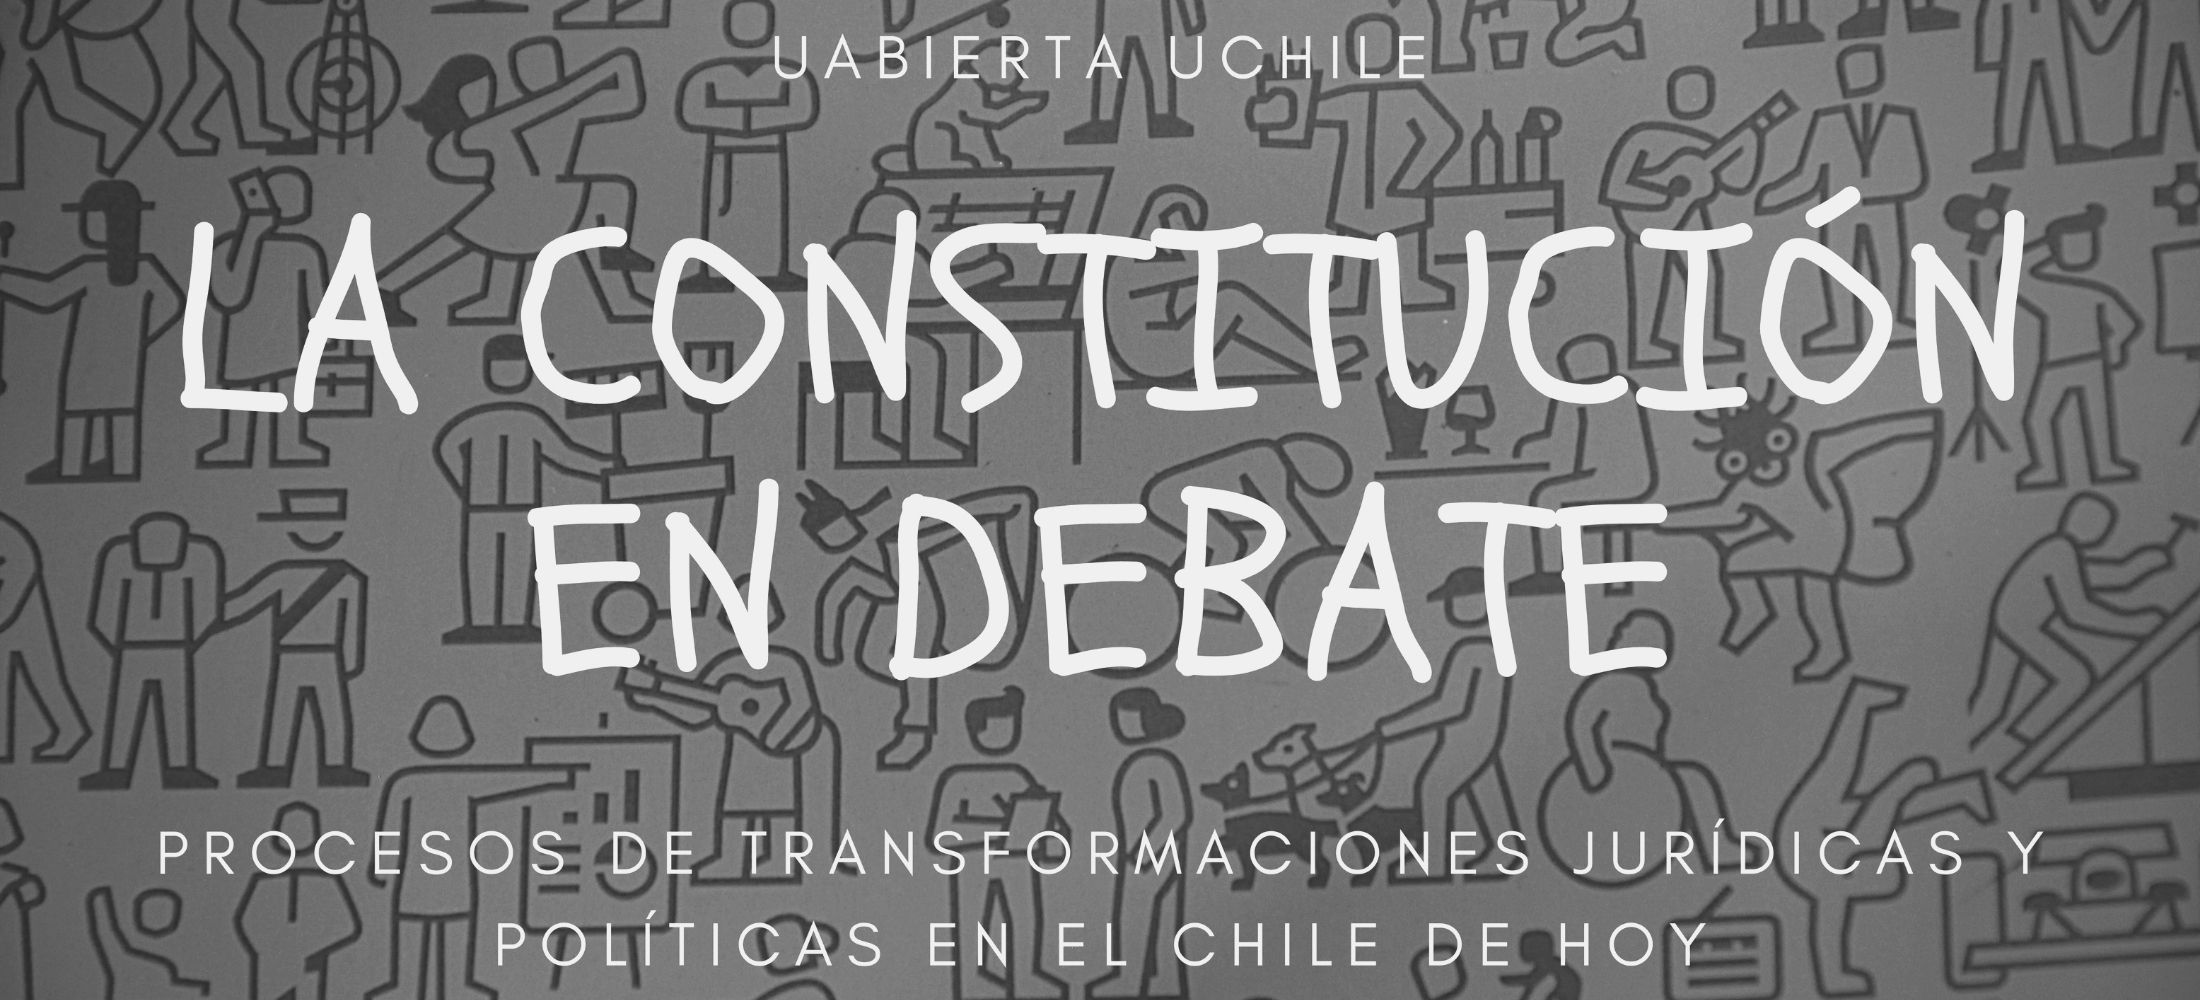 La Constitución en debate cuarta edición UCH_52